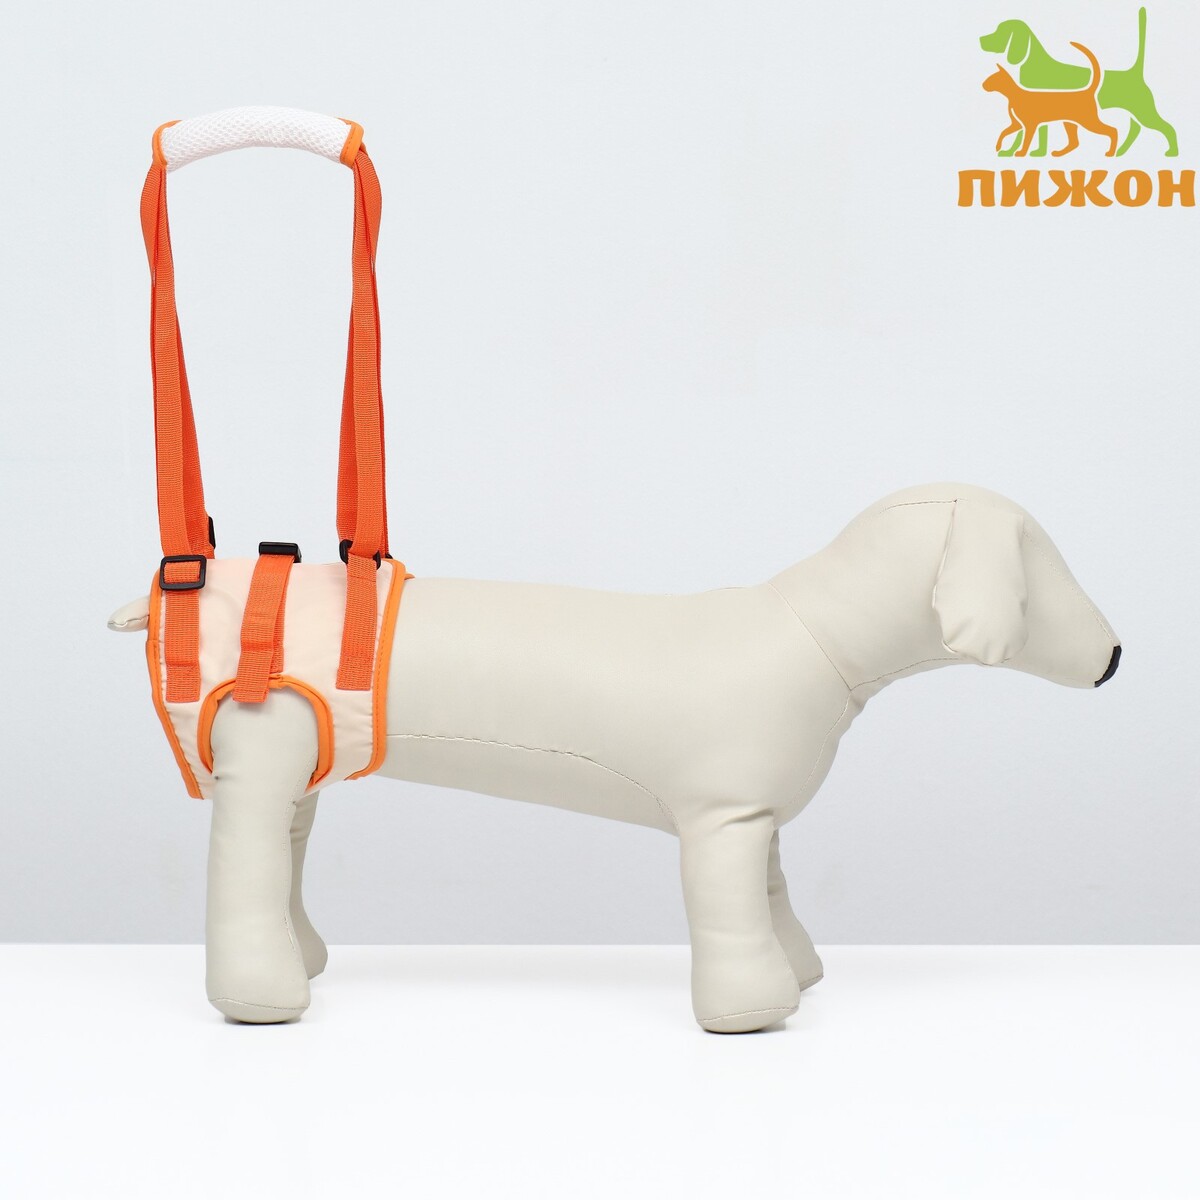 Ремень вспомогательный для задних лап, размер m (от 56-66 см, вес 25-40 кг), оранжевый оранжевый тканевый ремень для мальчика 90 см